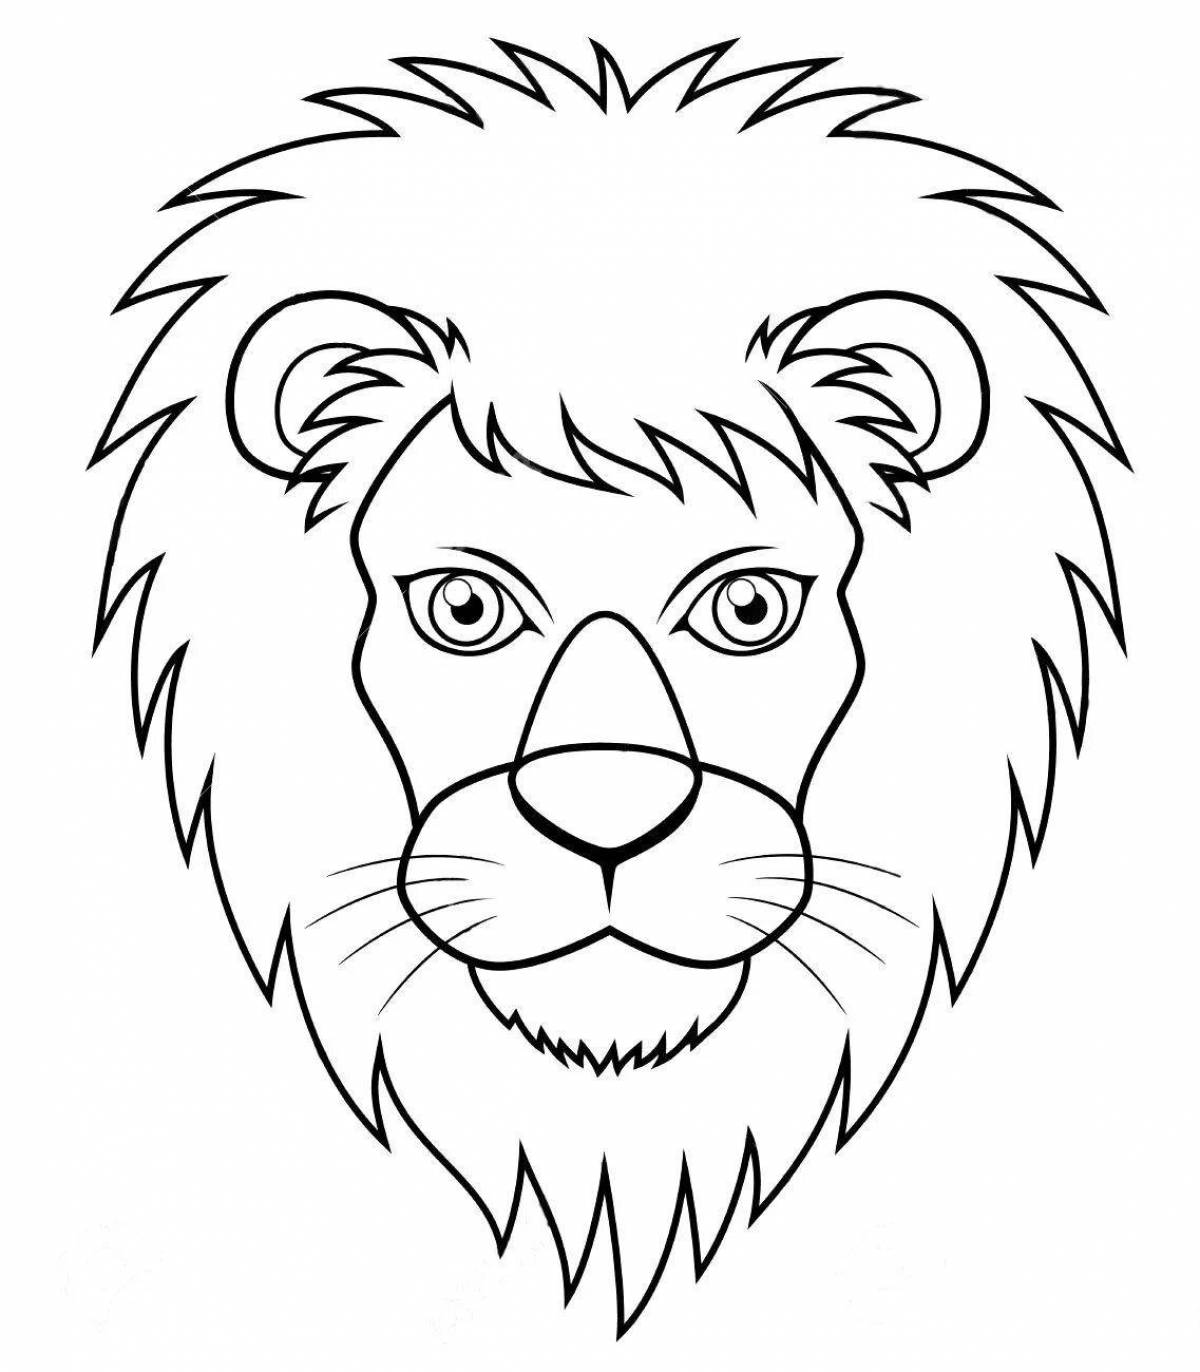 Голова льва Изображения – скачать бесплатно на Freepik